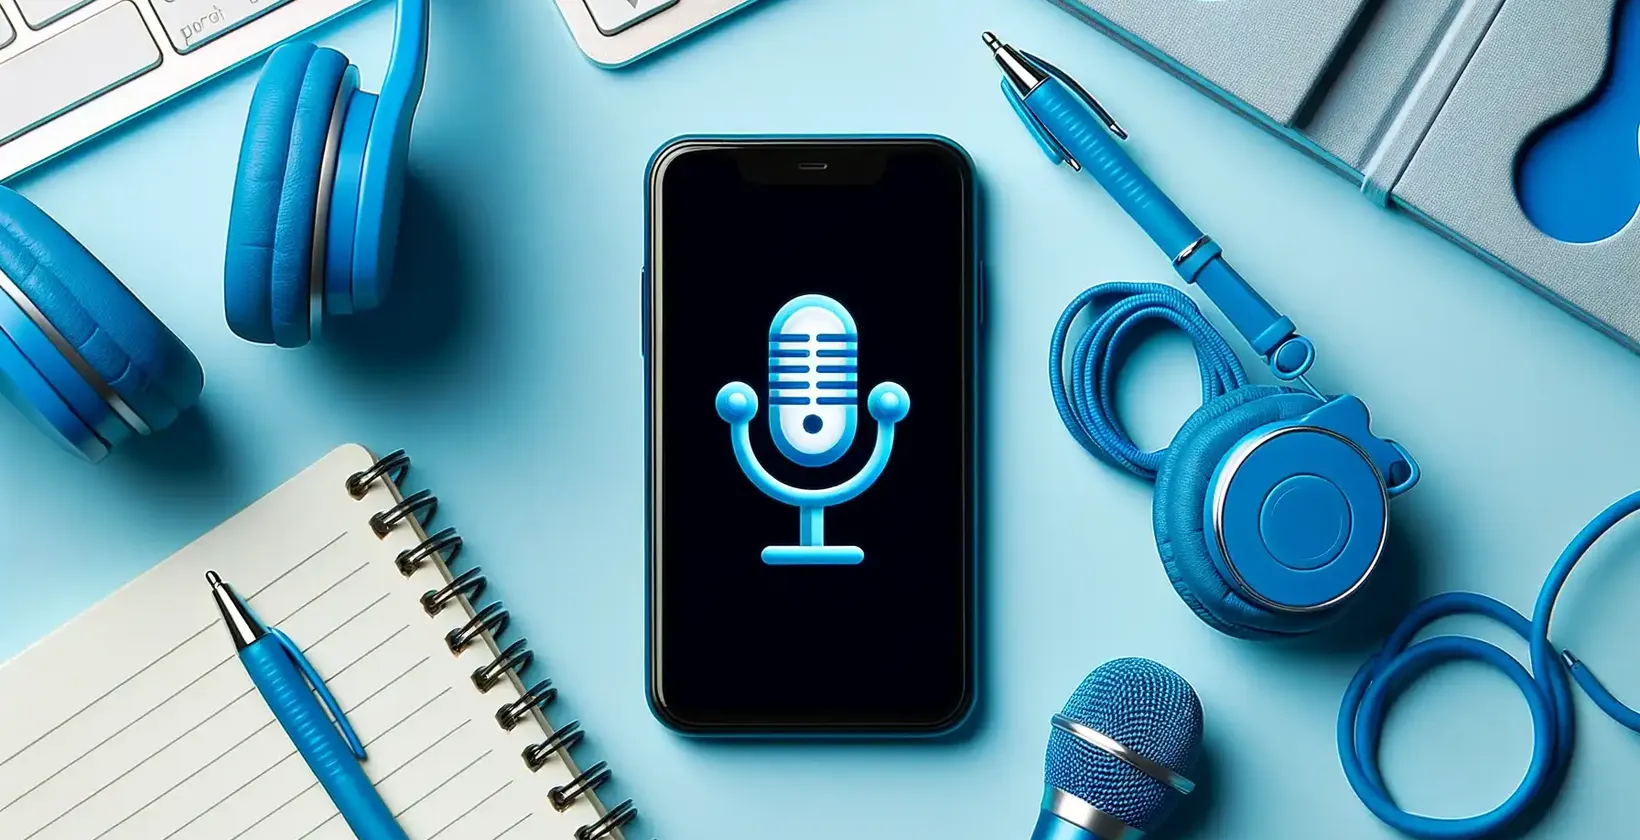 Application de transcription audio présentée sur un smartphone avec des écouteurs bleus, un bloc-notes et des accessoires technologiques.